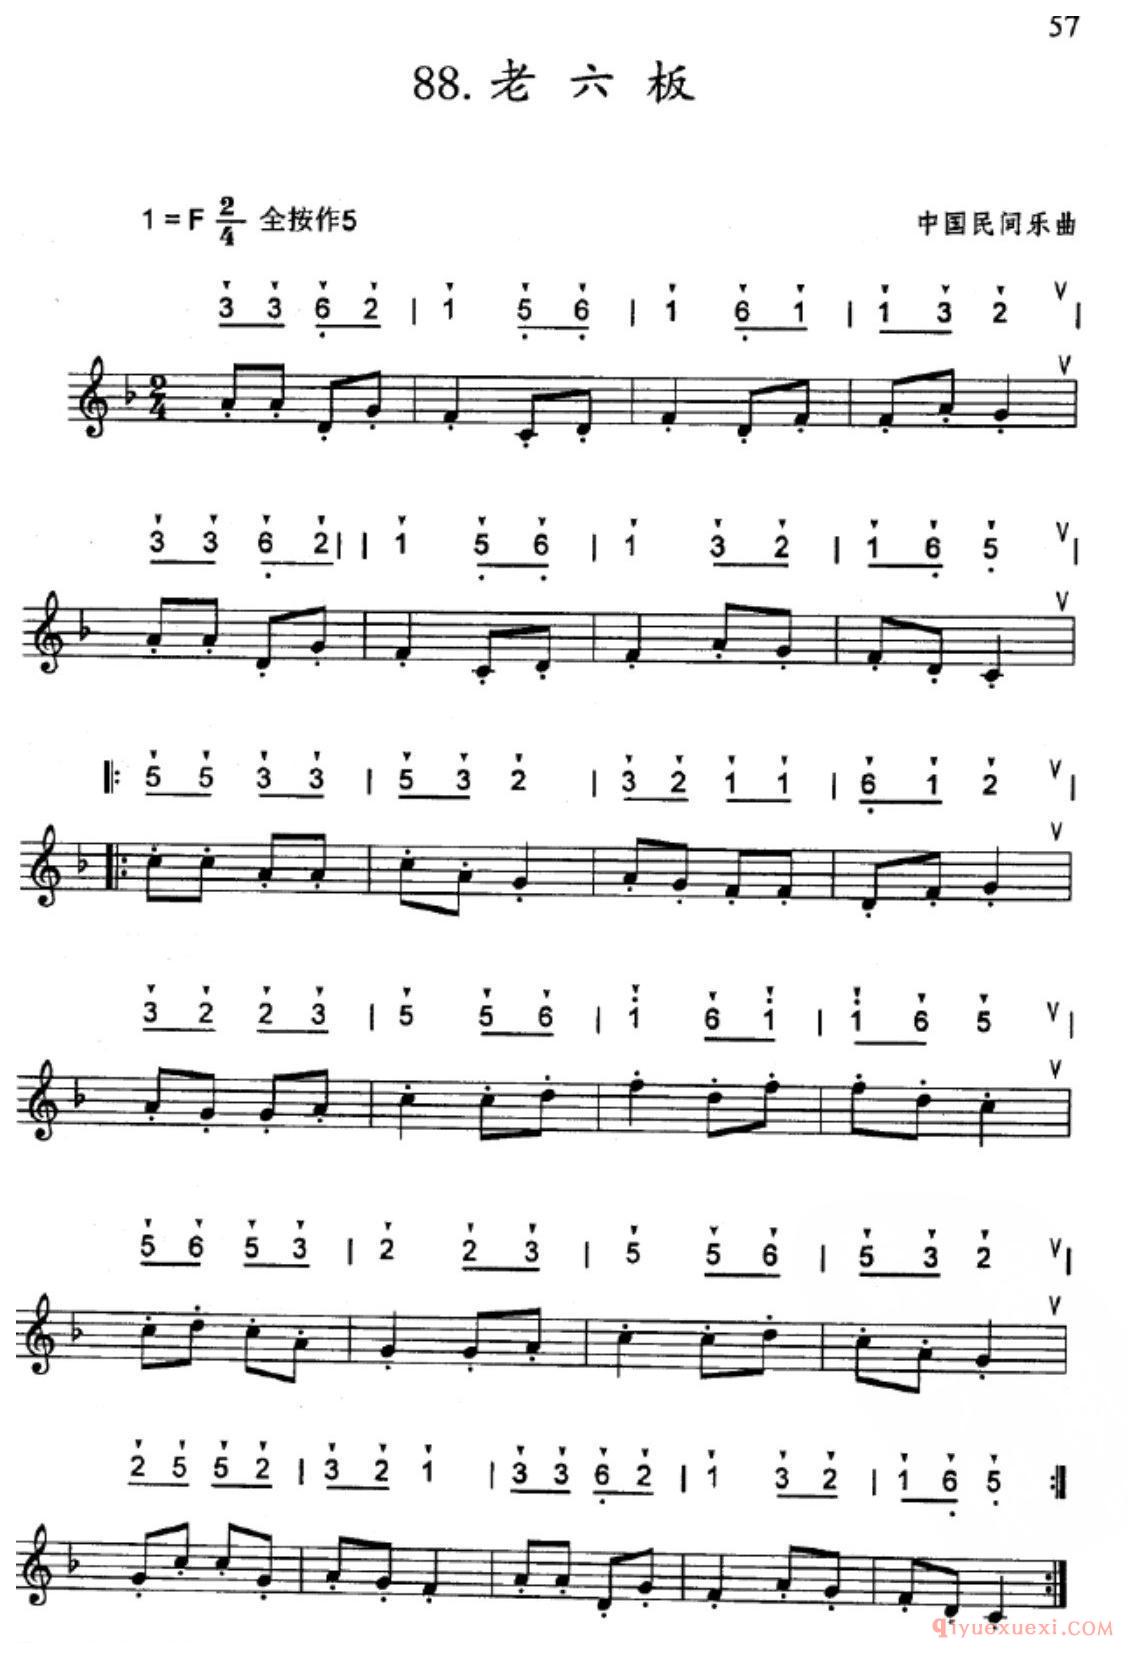 竖笛练习曲_老六板_五线谱与简谱对照